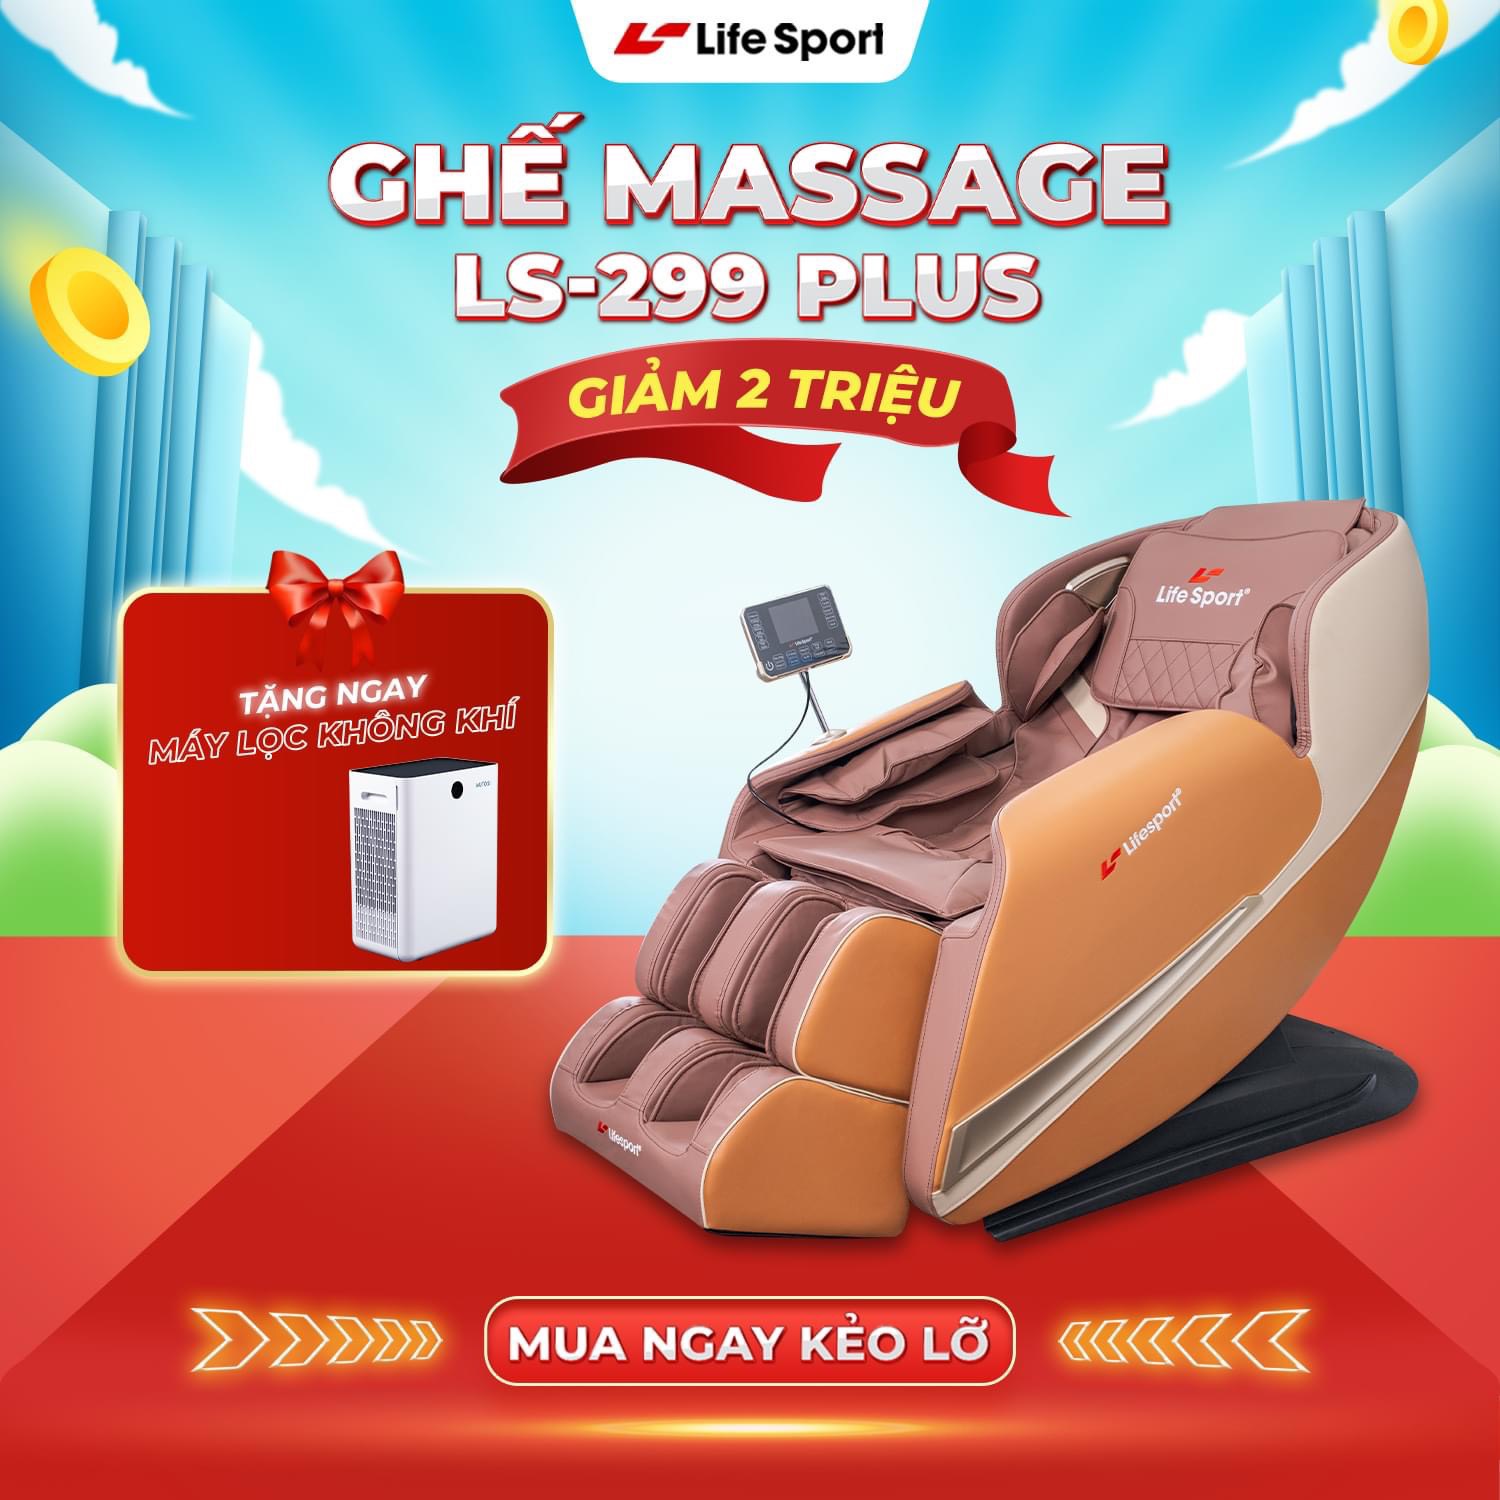 Ghế massage Lifesport ls299plus giảm giá khủng tặng quà 10 triệu đồng